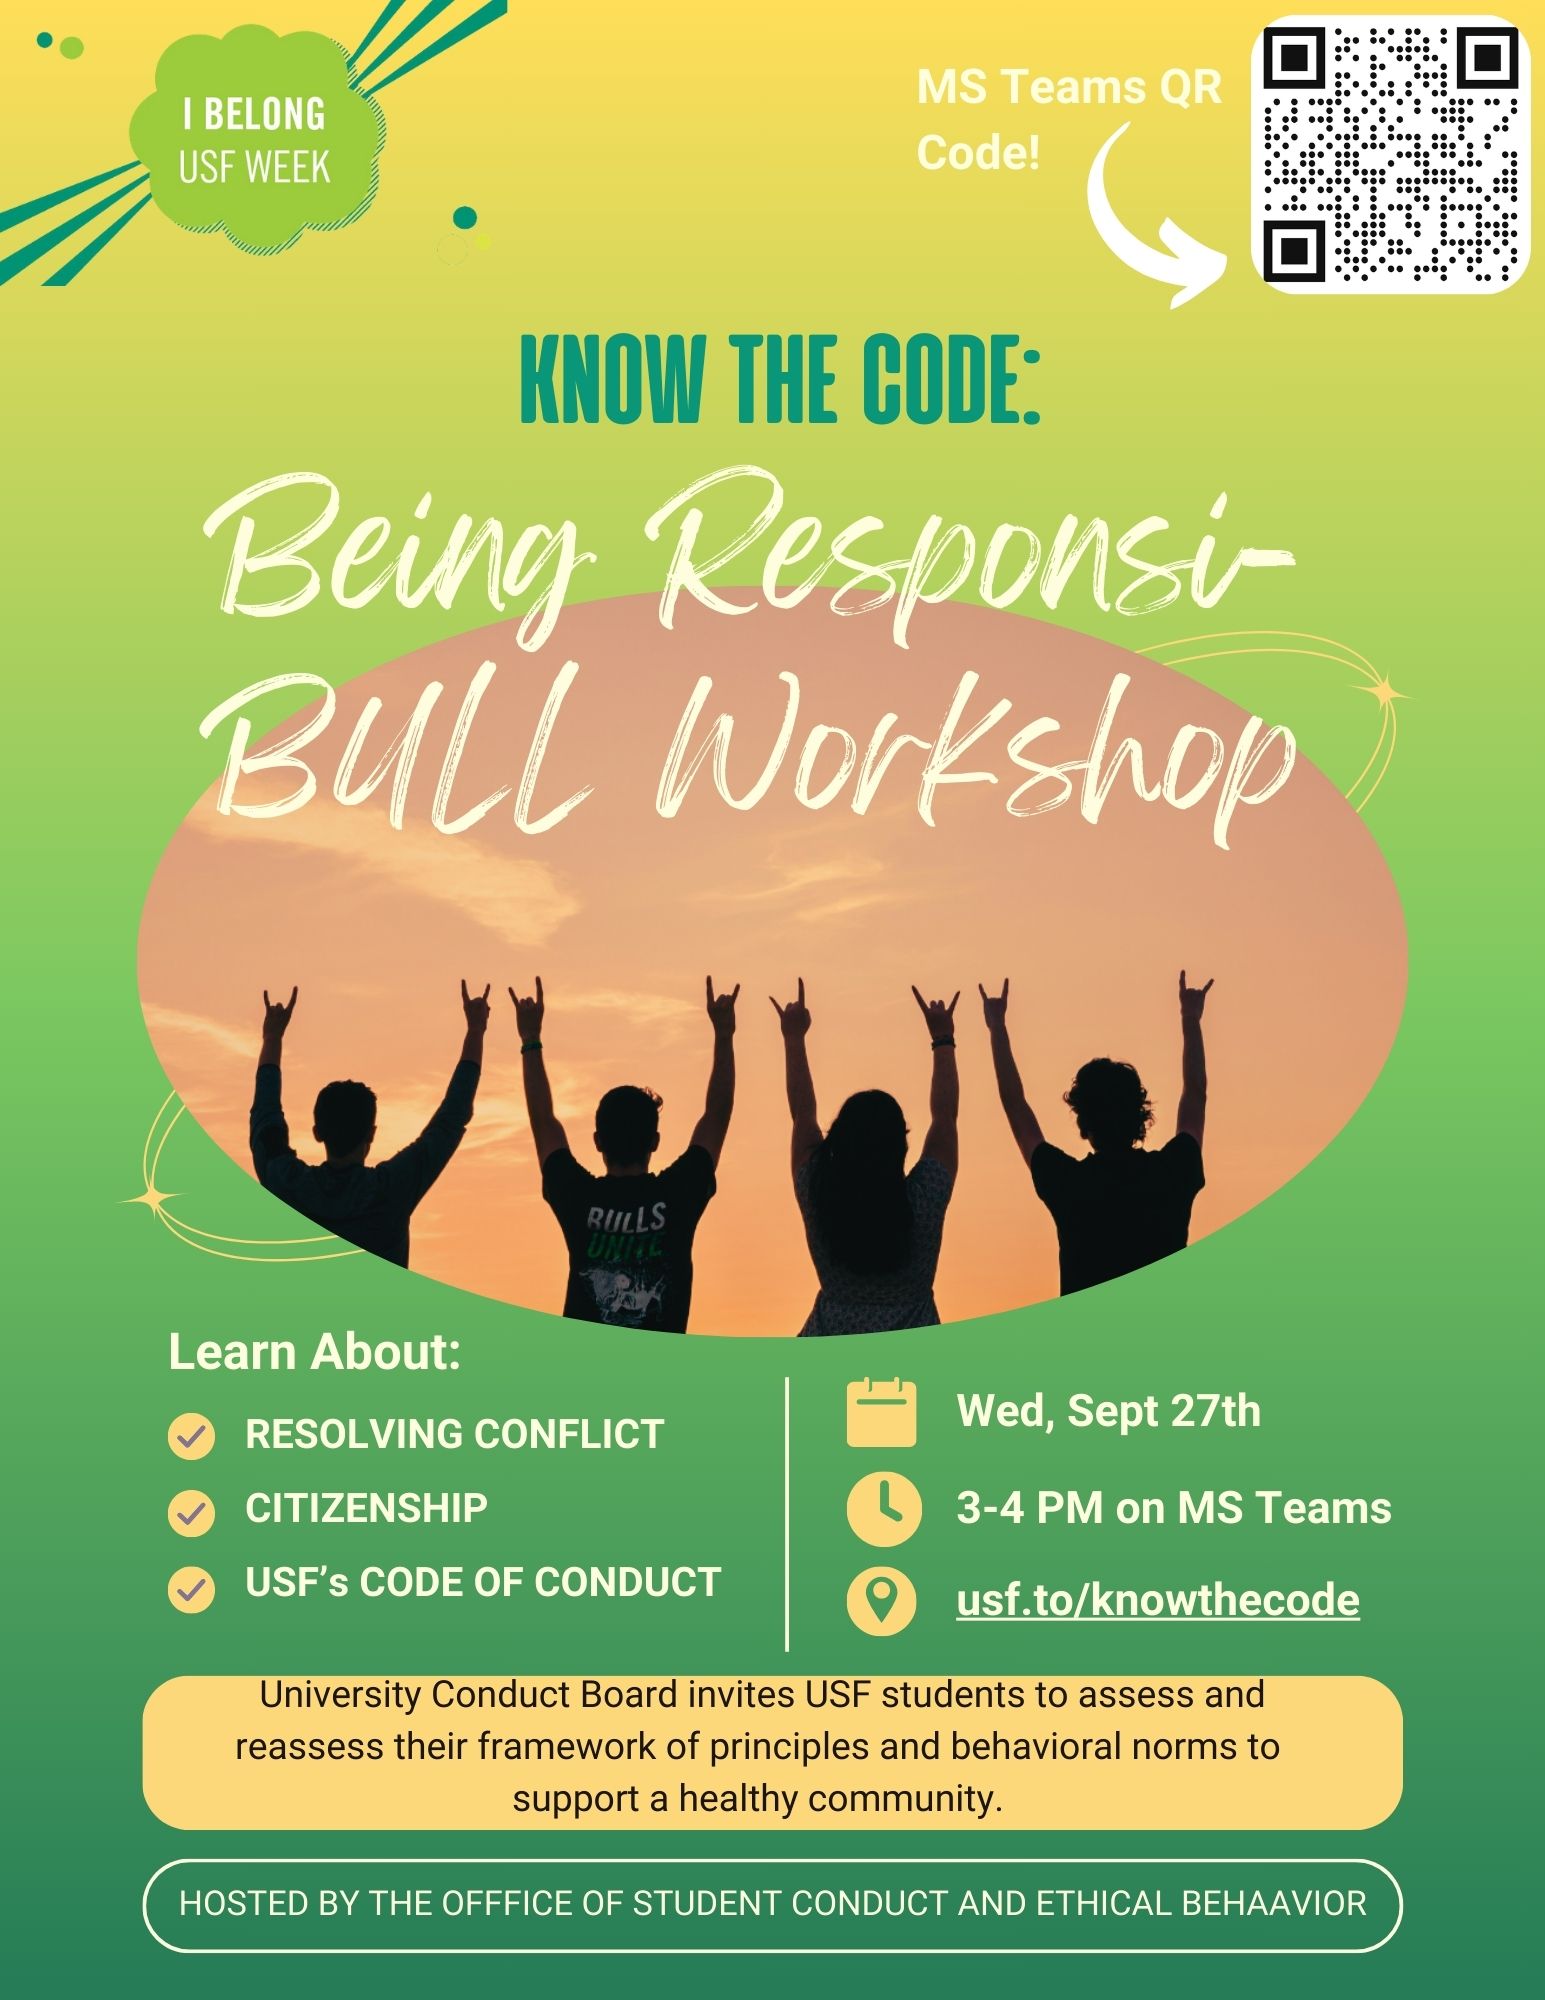 Responsi-BULL Workshop flyer